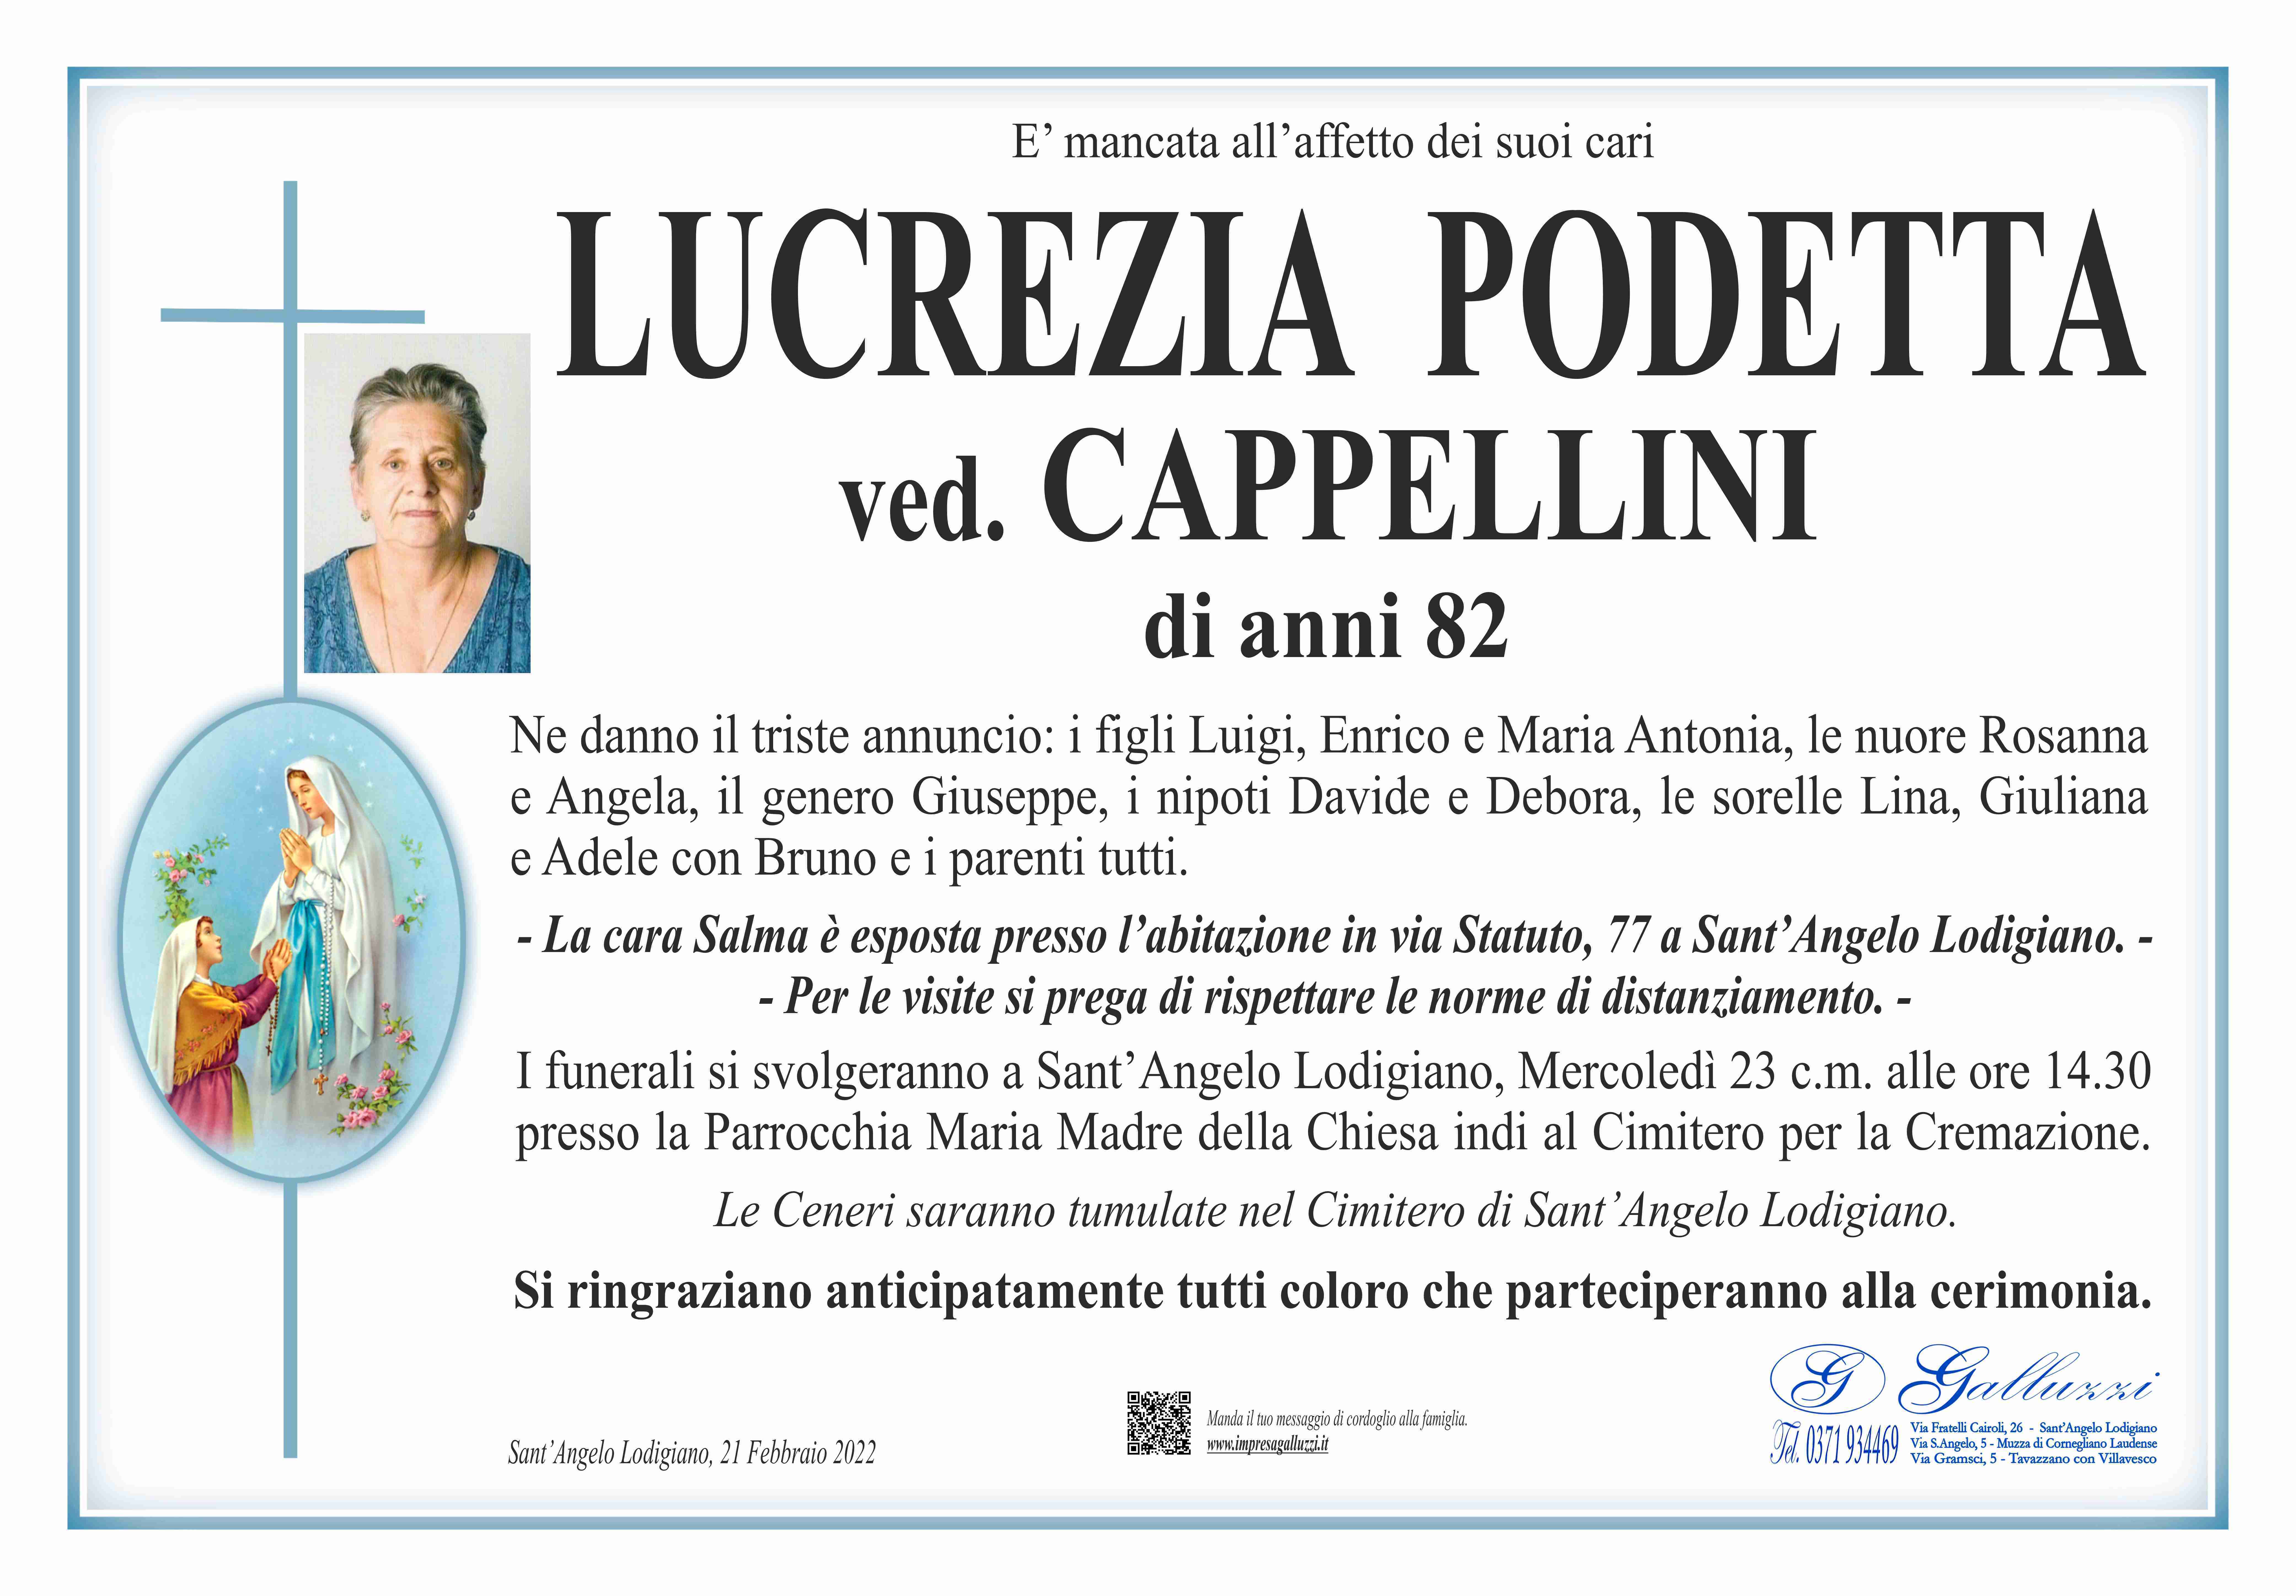 Lucrezia Podetta